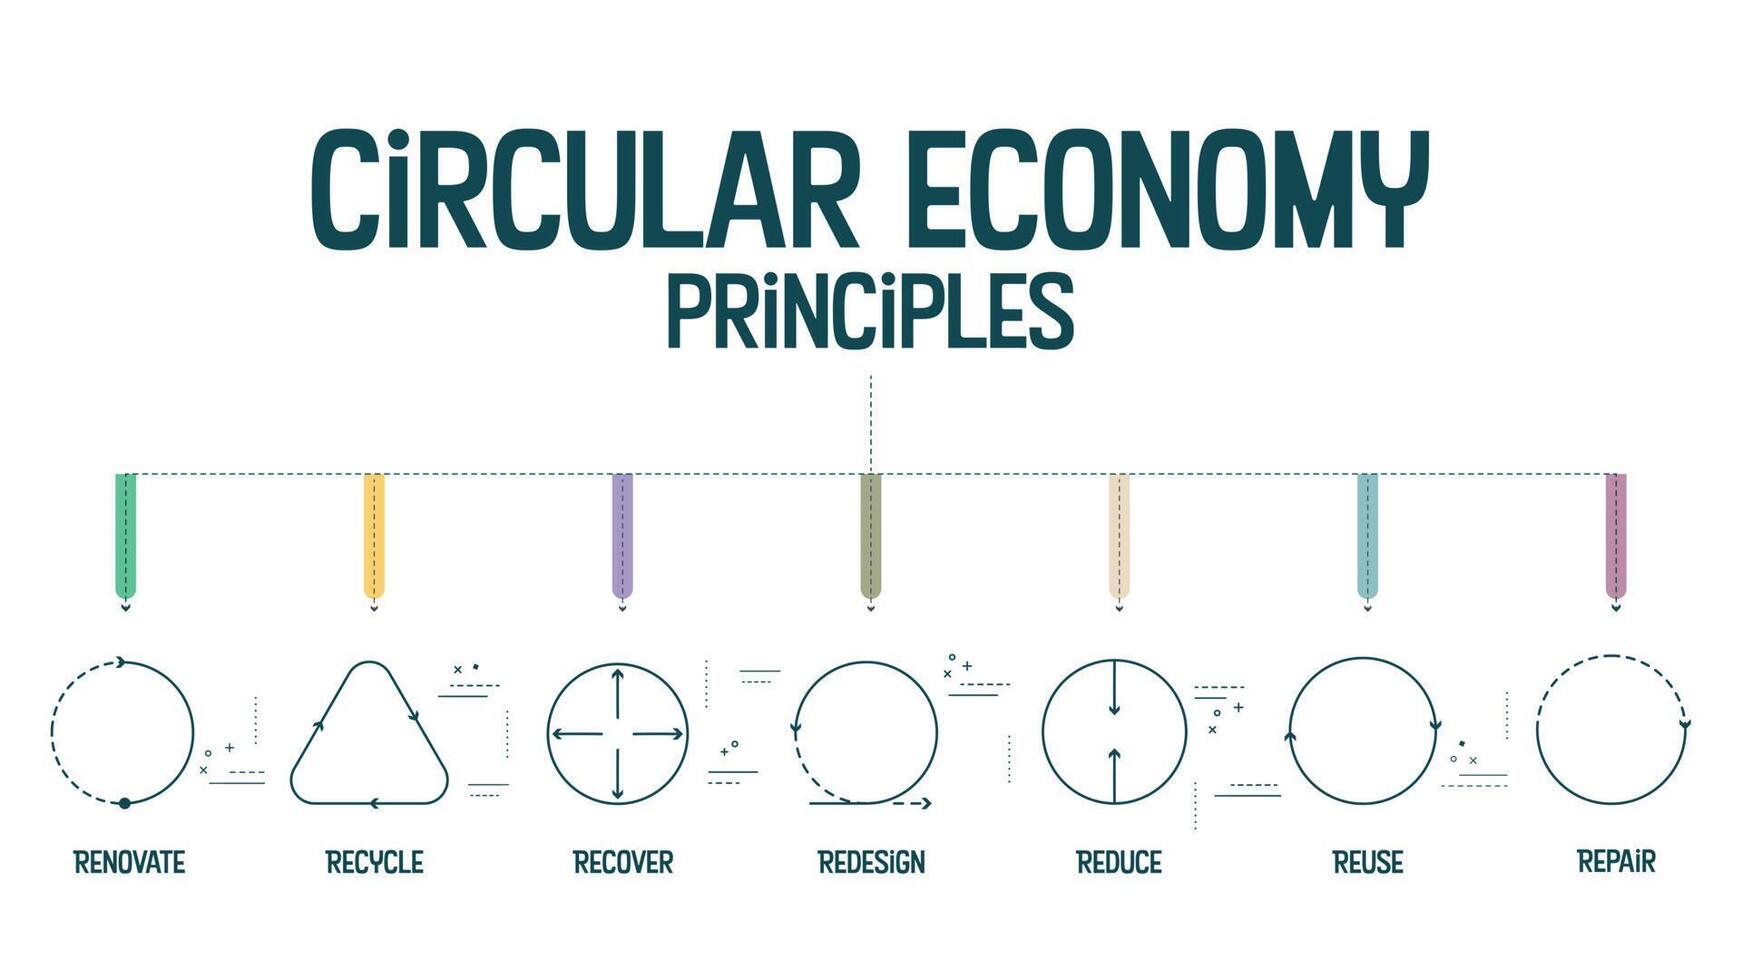 7r circular economía principios concepto para económico sustentabilidad de producción y consumo tiene 7 7 pasos a analizar tal como reducir, reciclar, recuperar, reparar, rediseño, reutilizar y renovar. vector. vector